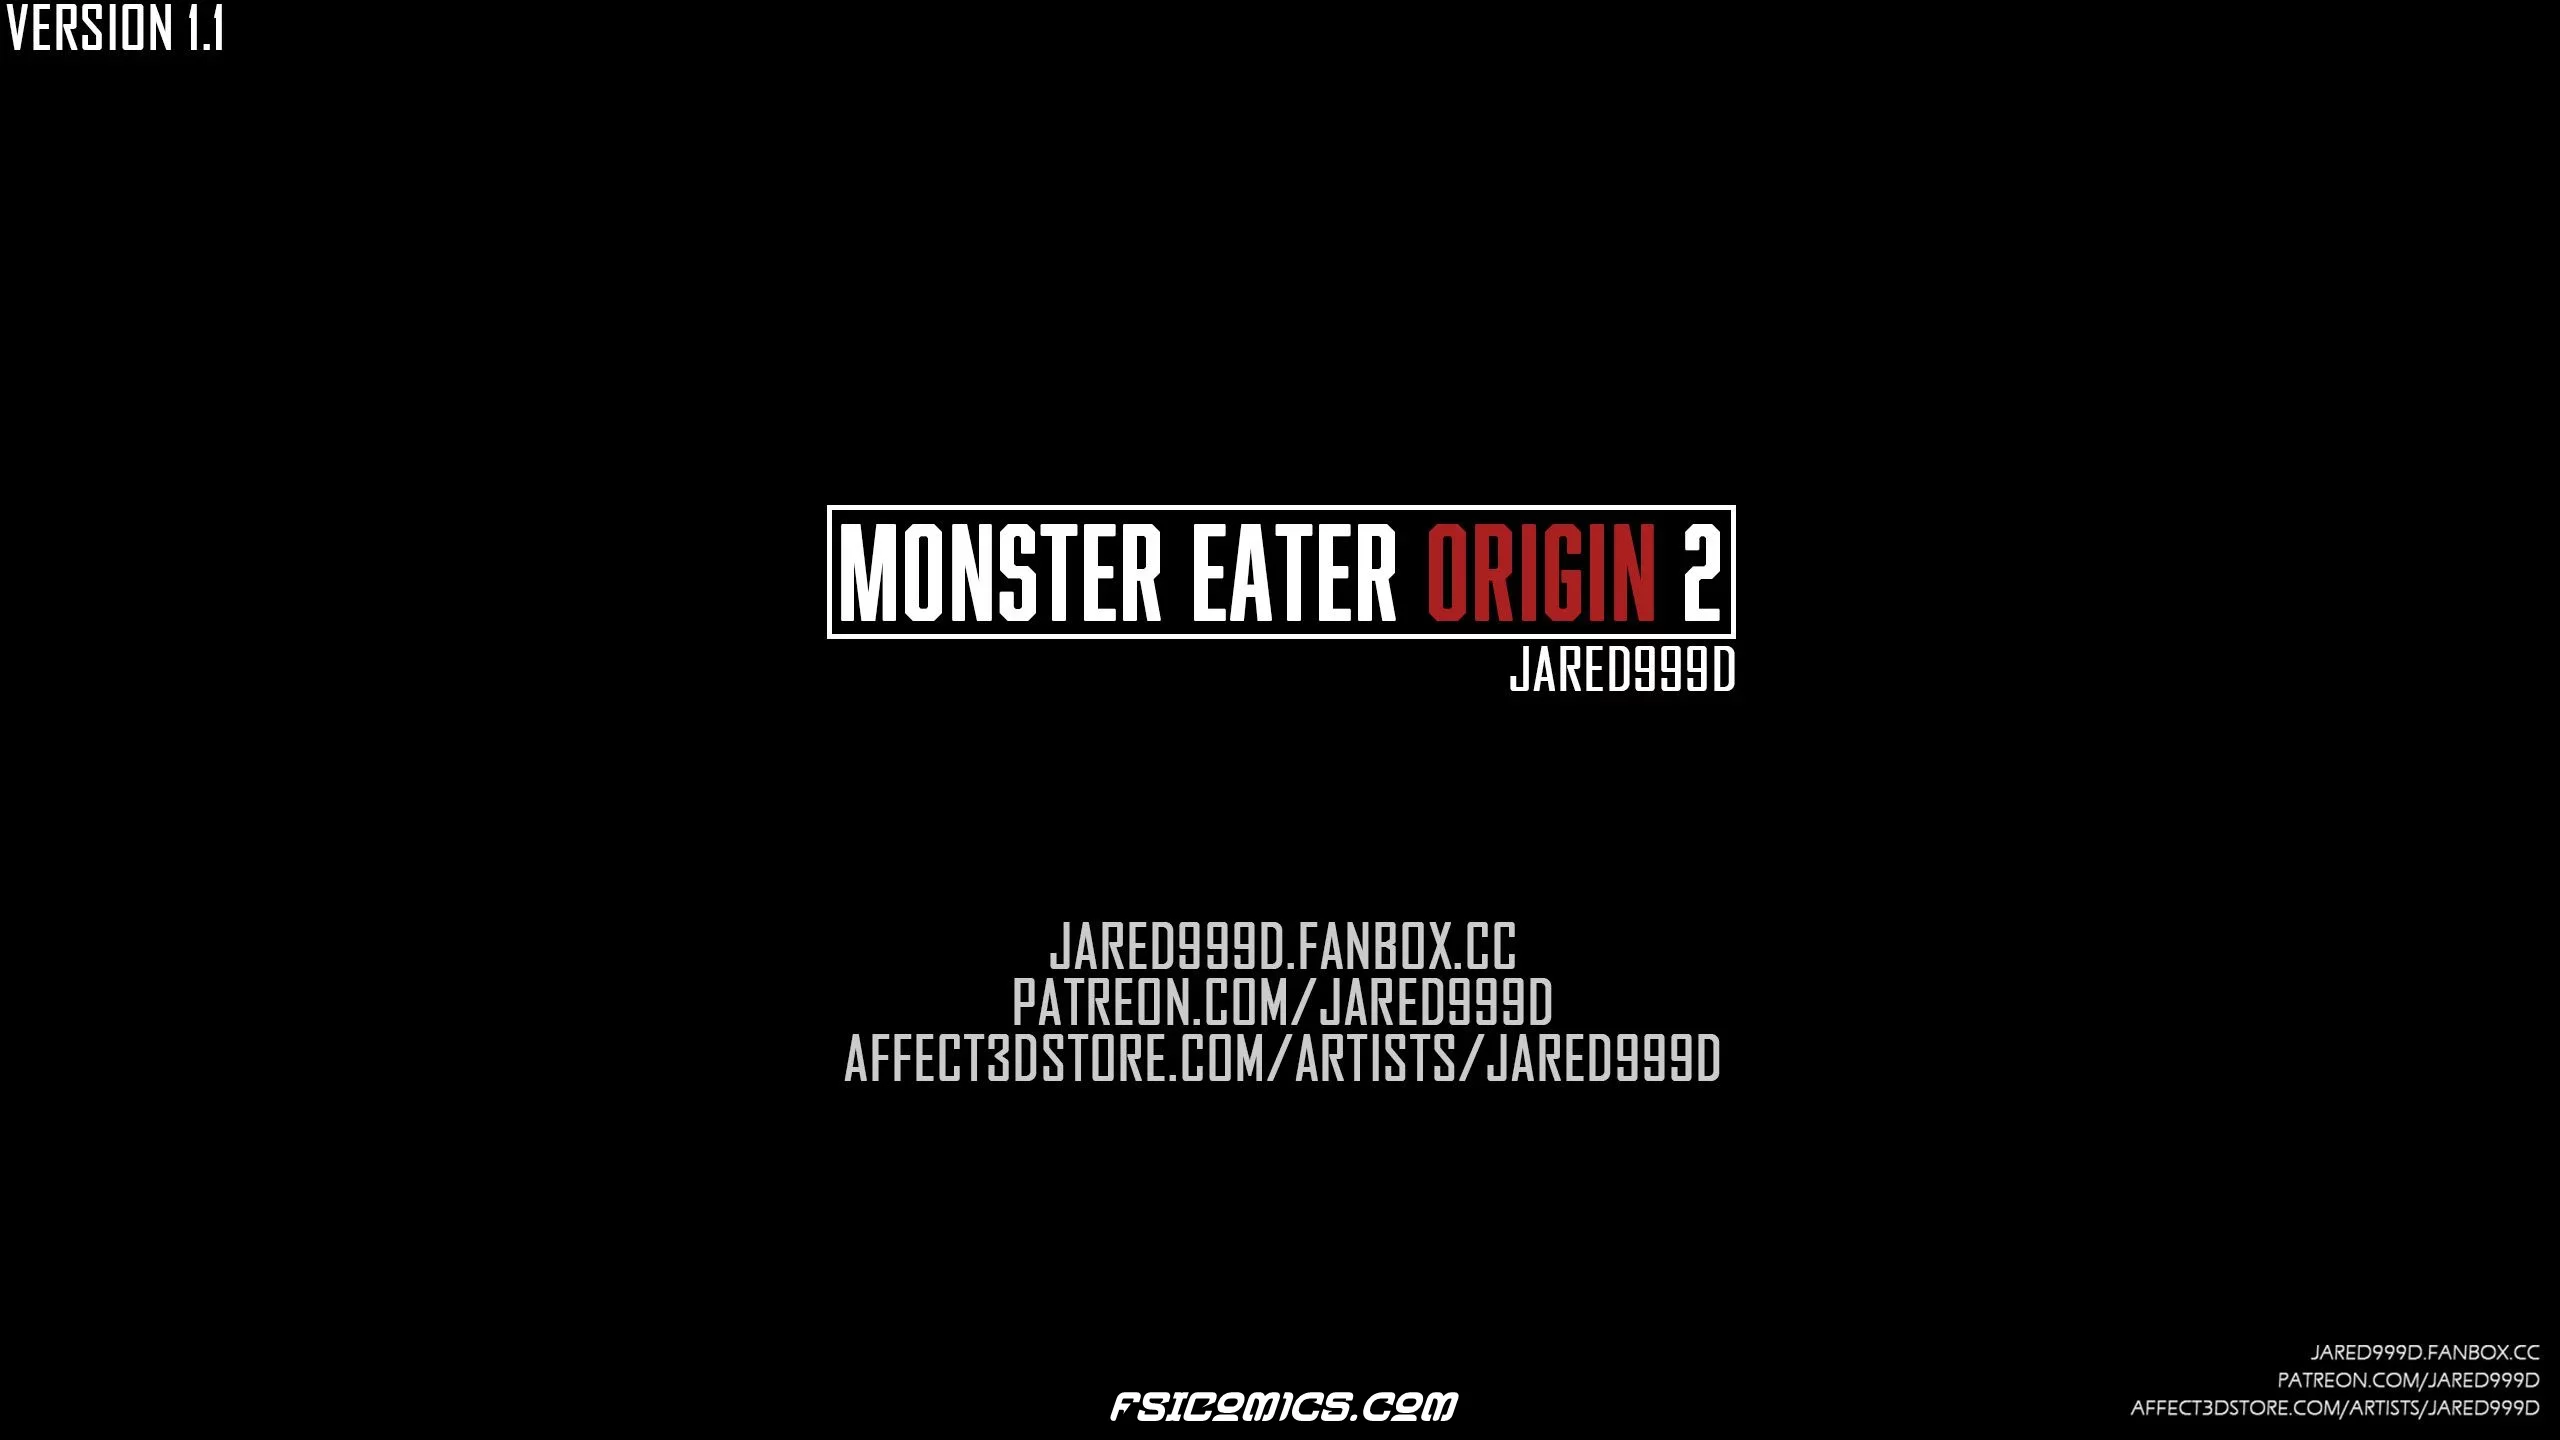 Monster Eater Origins Chapter 2 - Jared999D - 35 - FSIComics